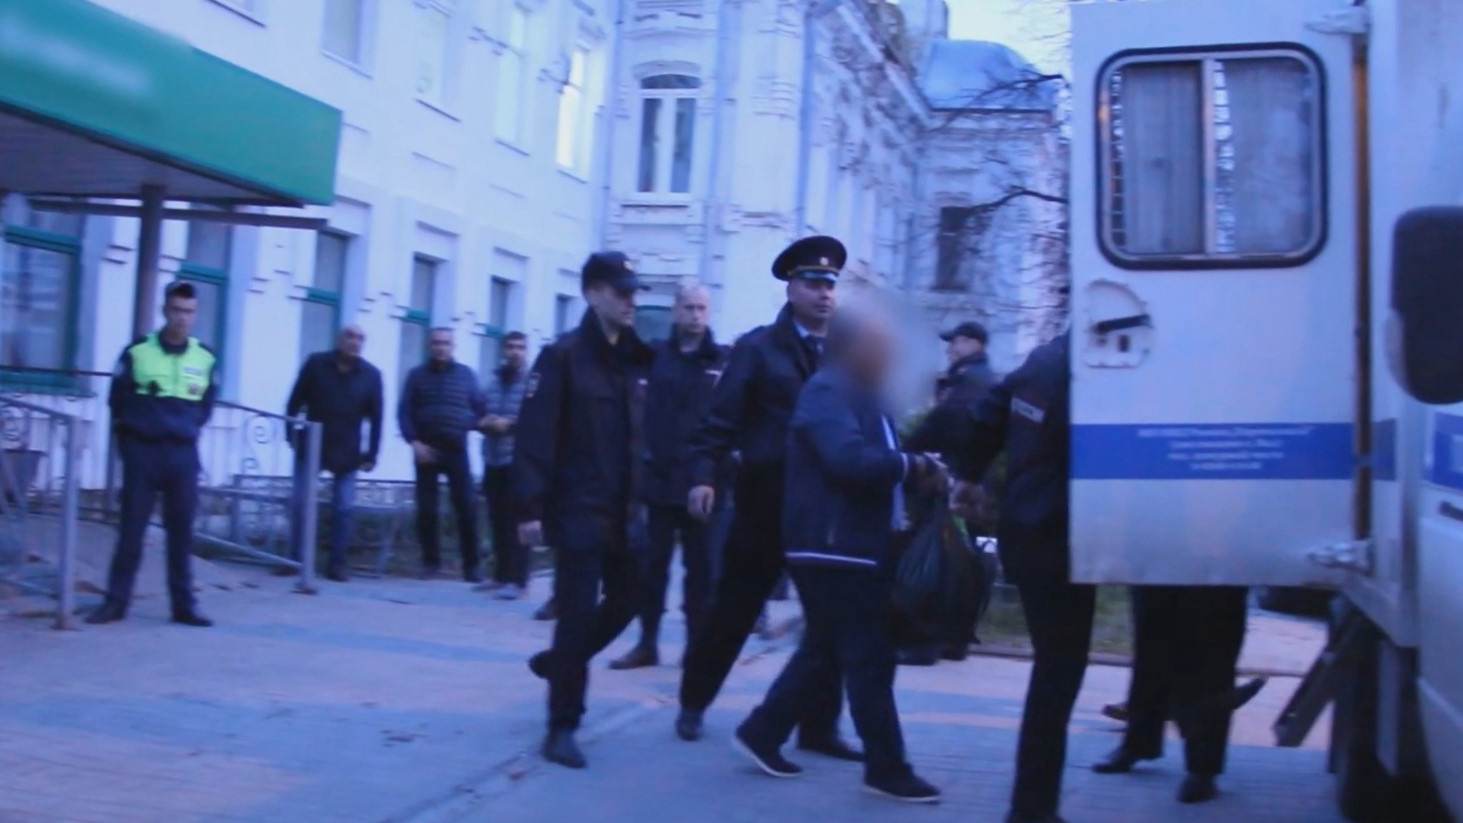 ФСБ задержала гендиректора нижегородской фирмы, подозреваемого в махинациях с бюджетными деньгами, — оперативное видео